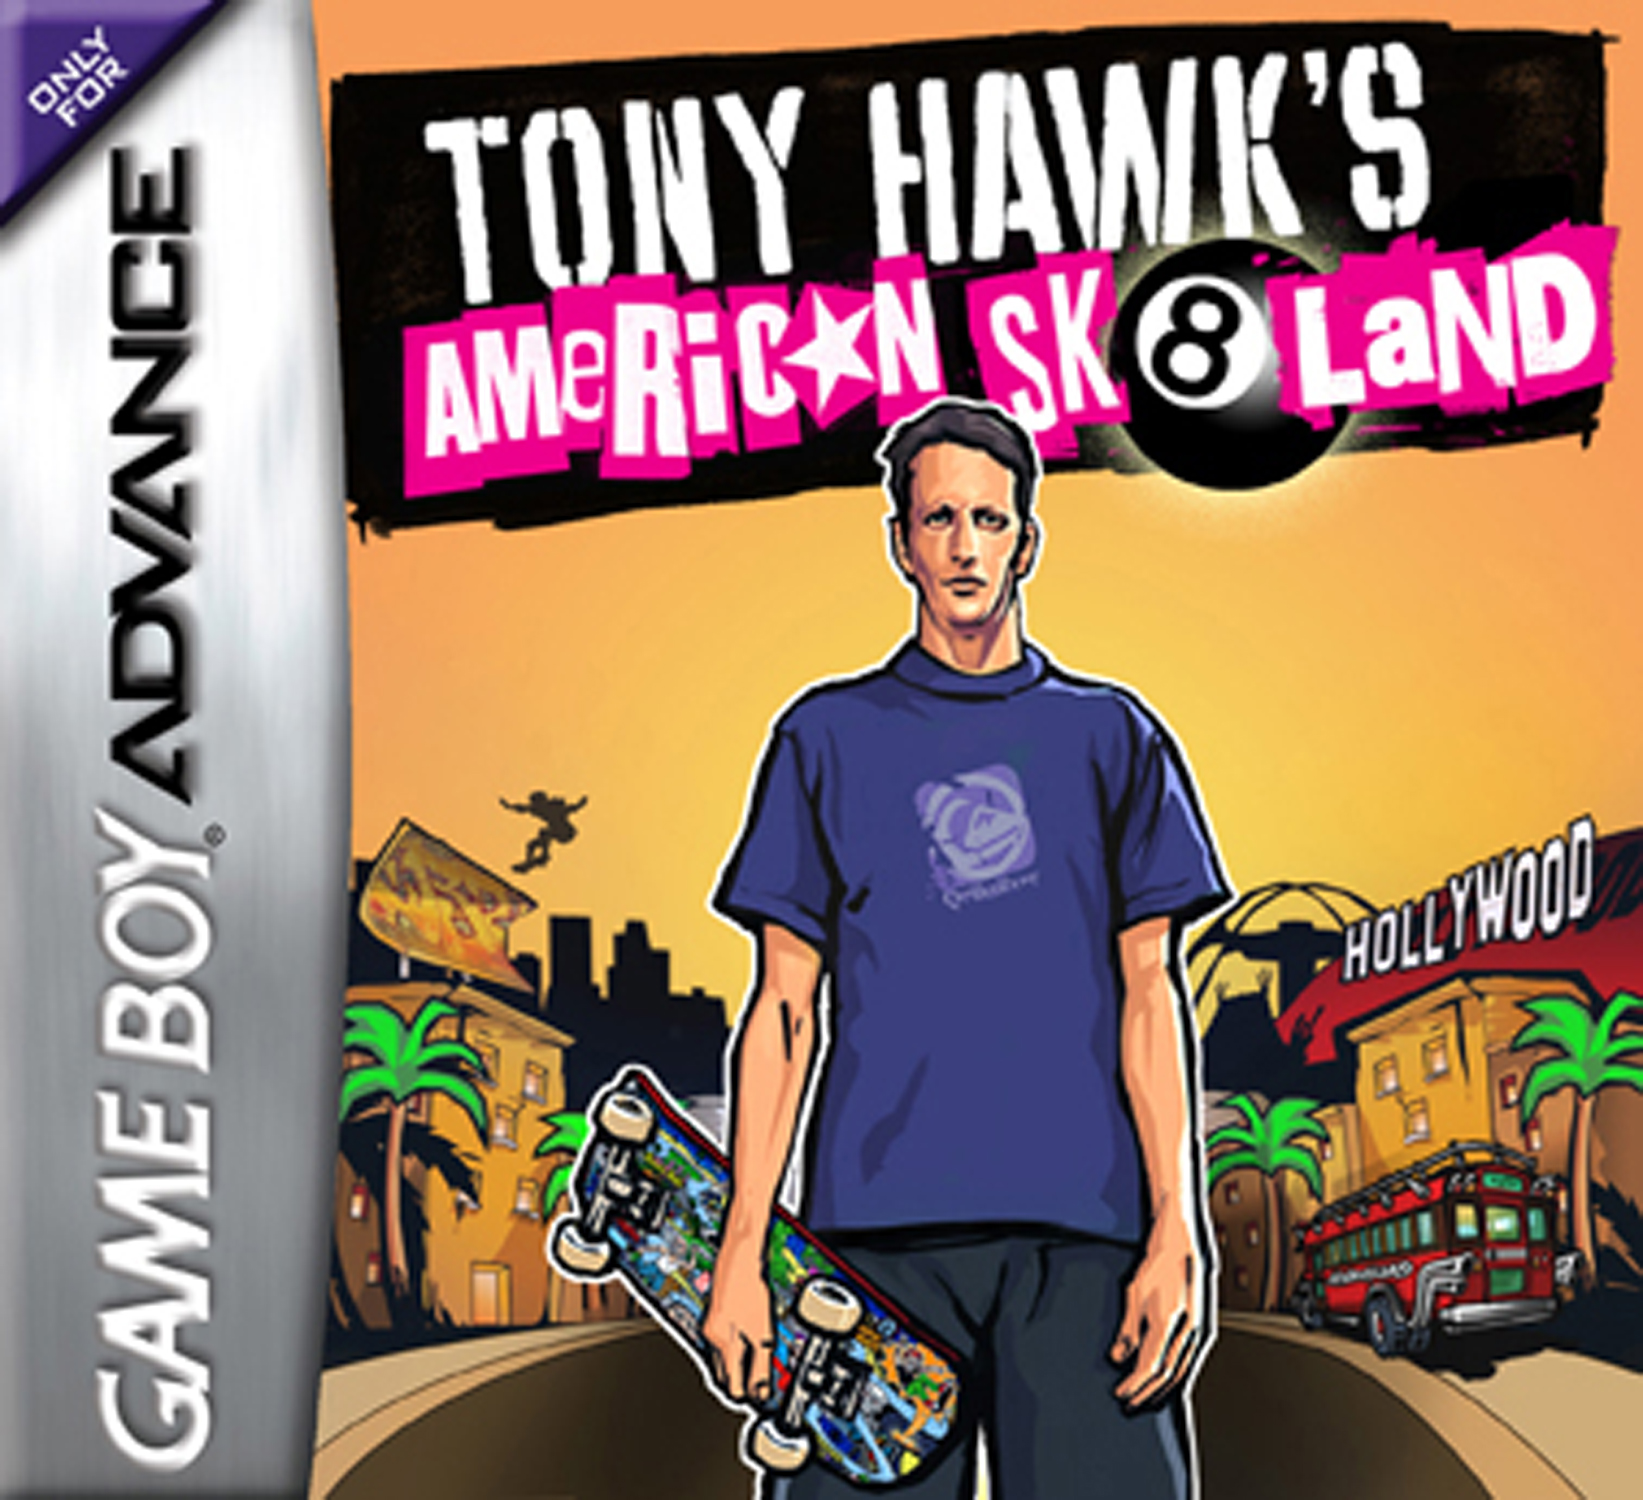 jaquette du jeu vidéo Tony Hawk's American Sk8land